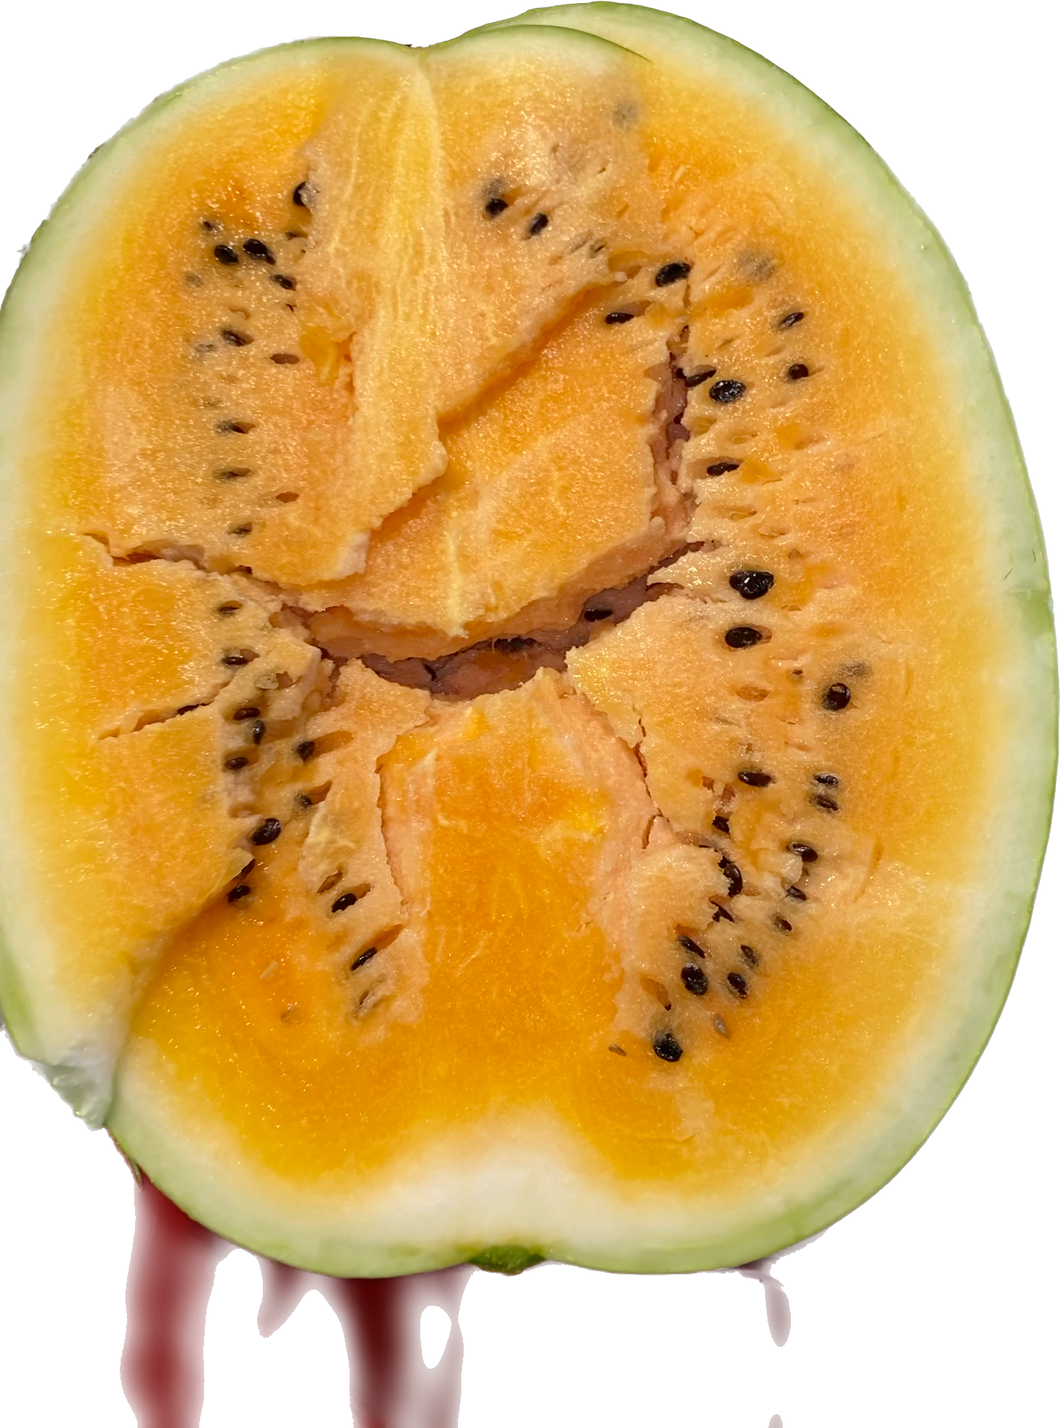 Orange Watermelon Seeds (1 pound)